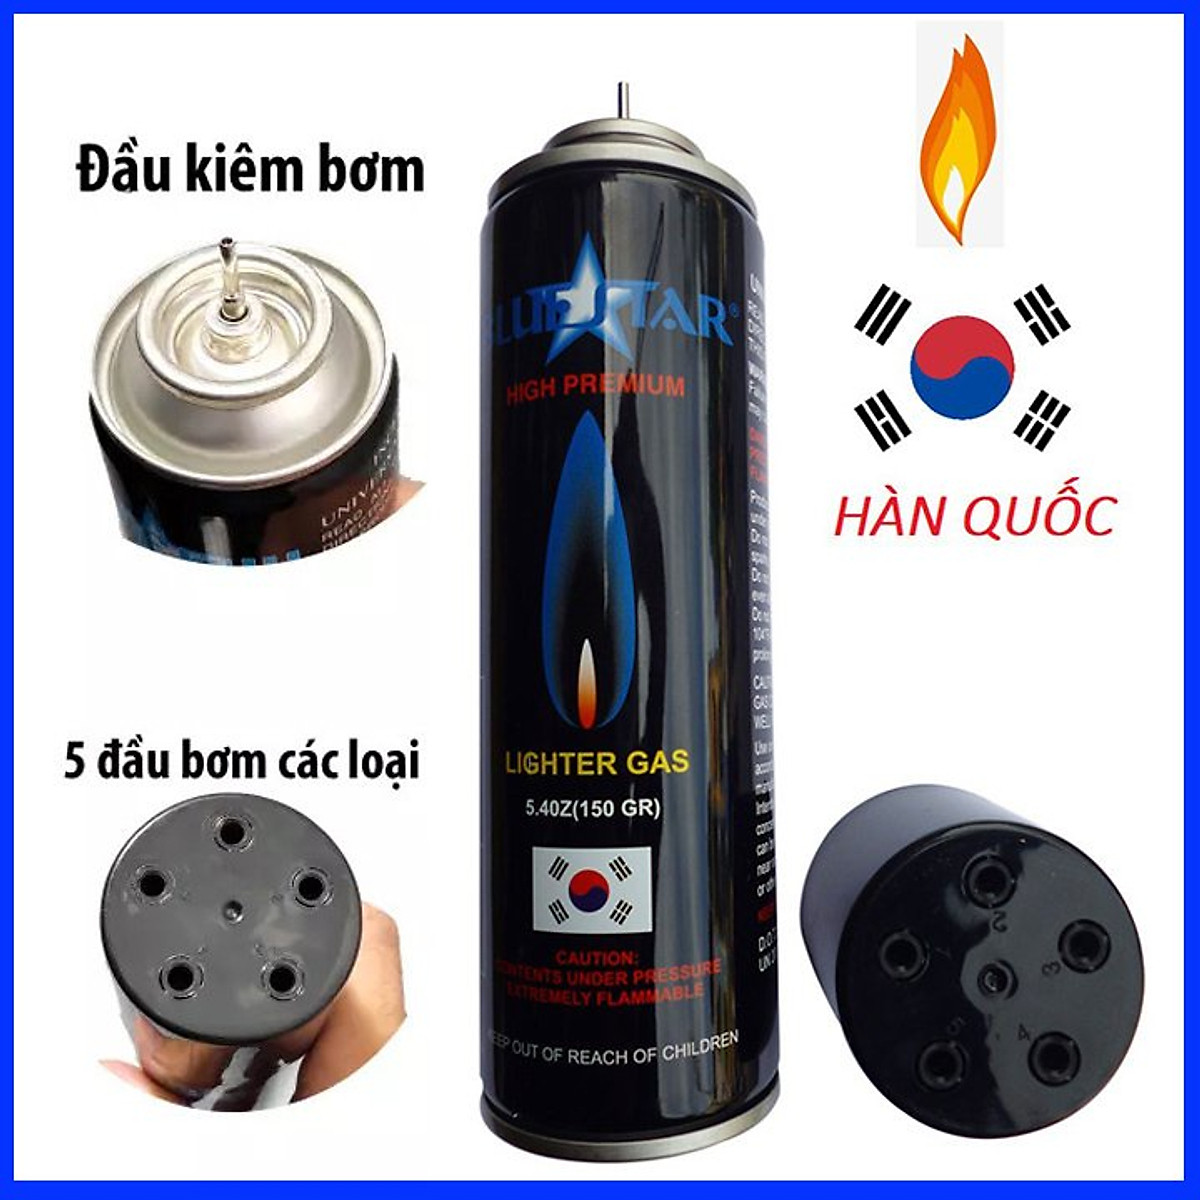 Bình ga Blue Hàn Quốc 150 gram cho bật-lửa-hộp-quẹt kèm 5 đầu bơm